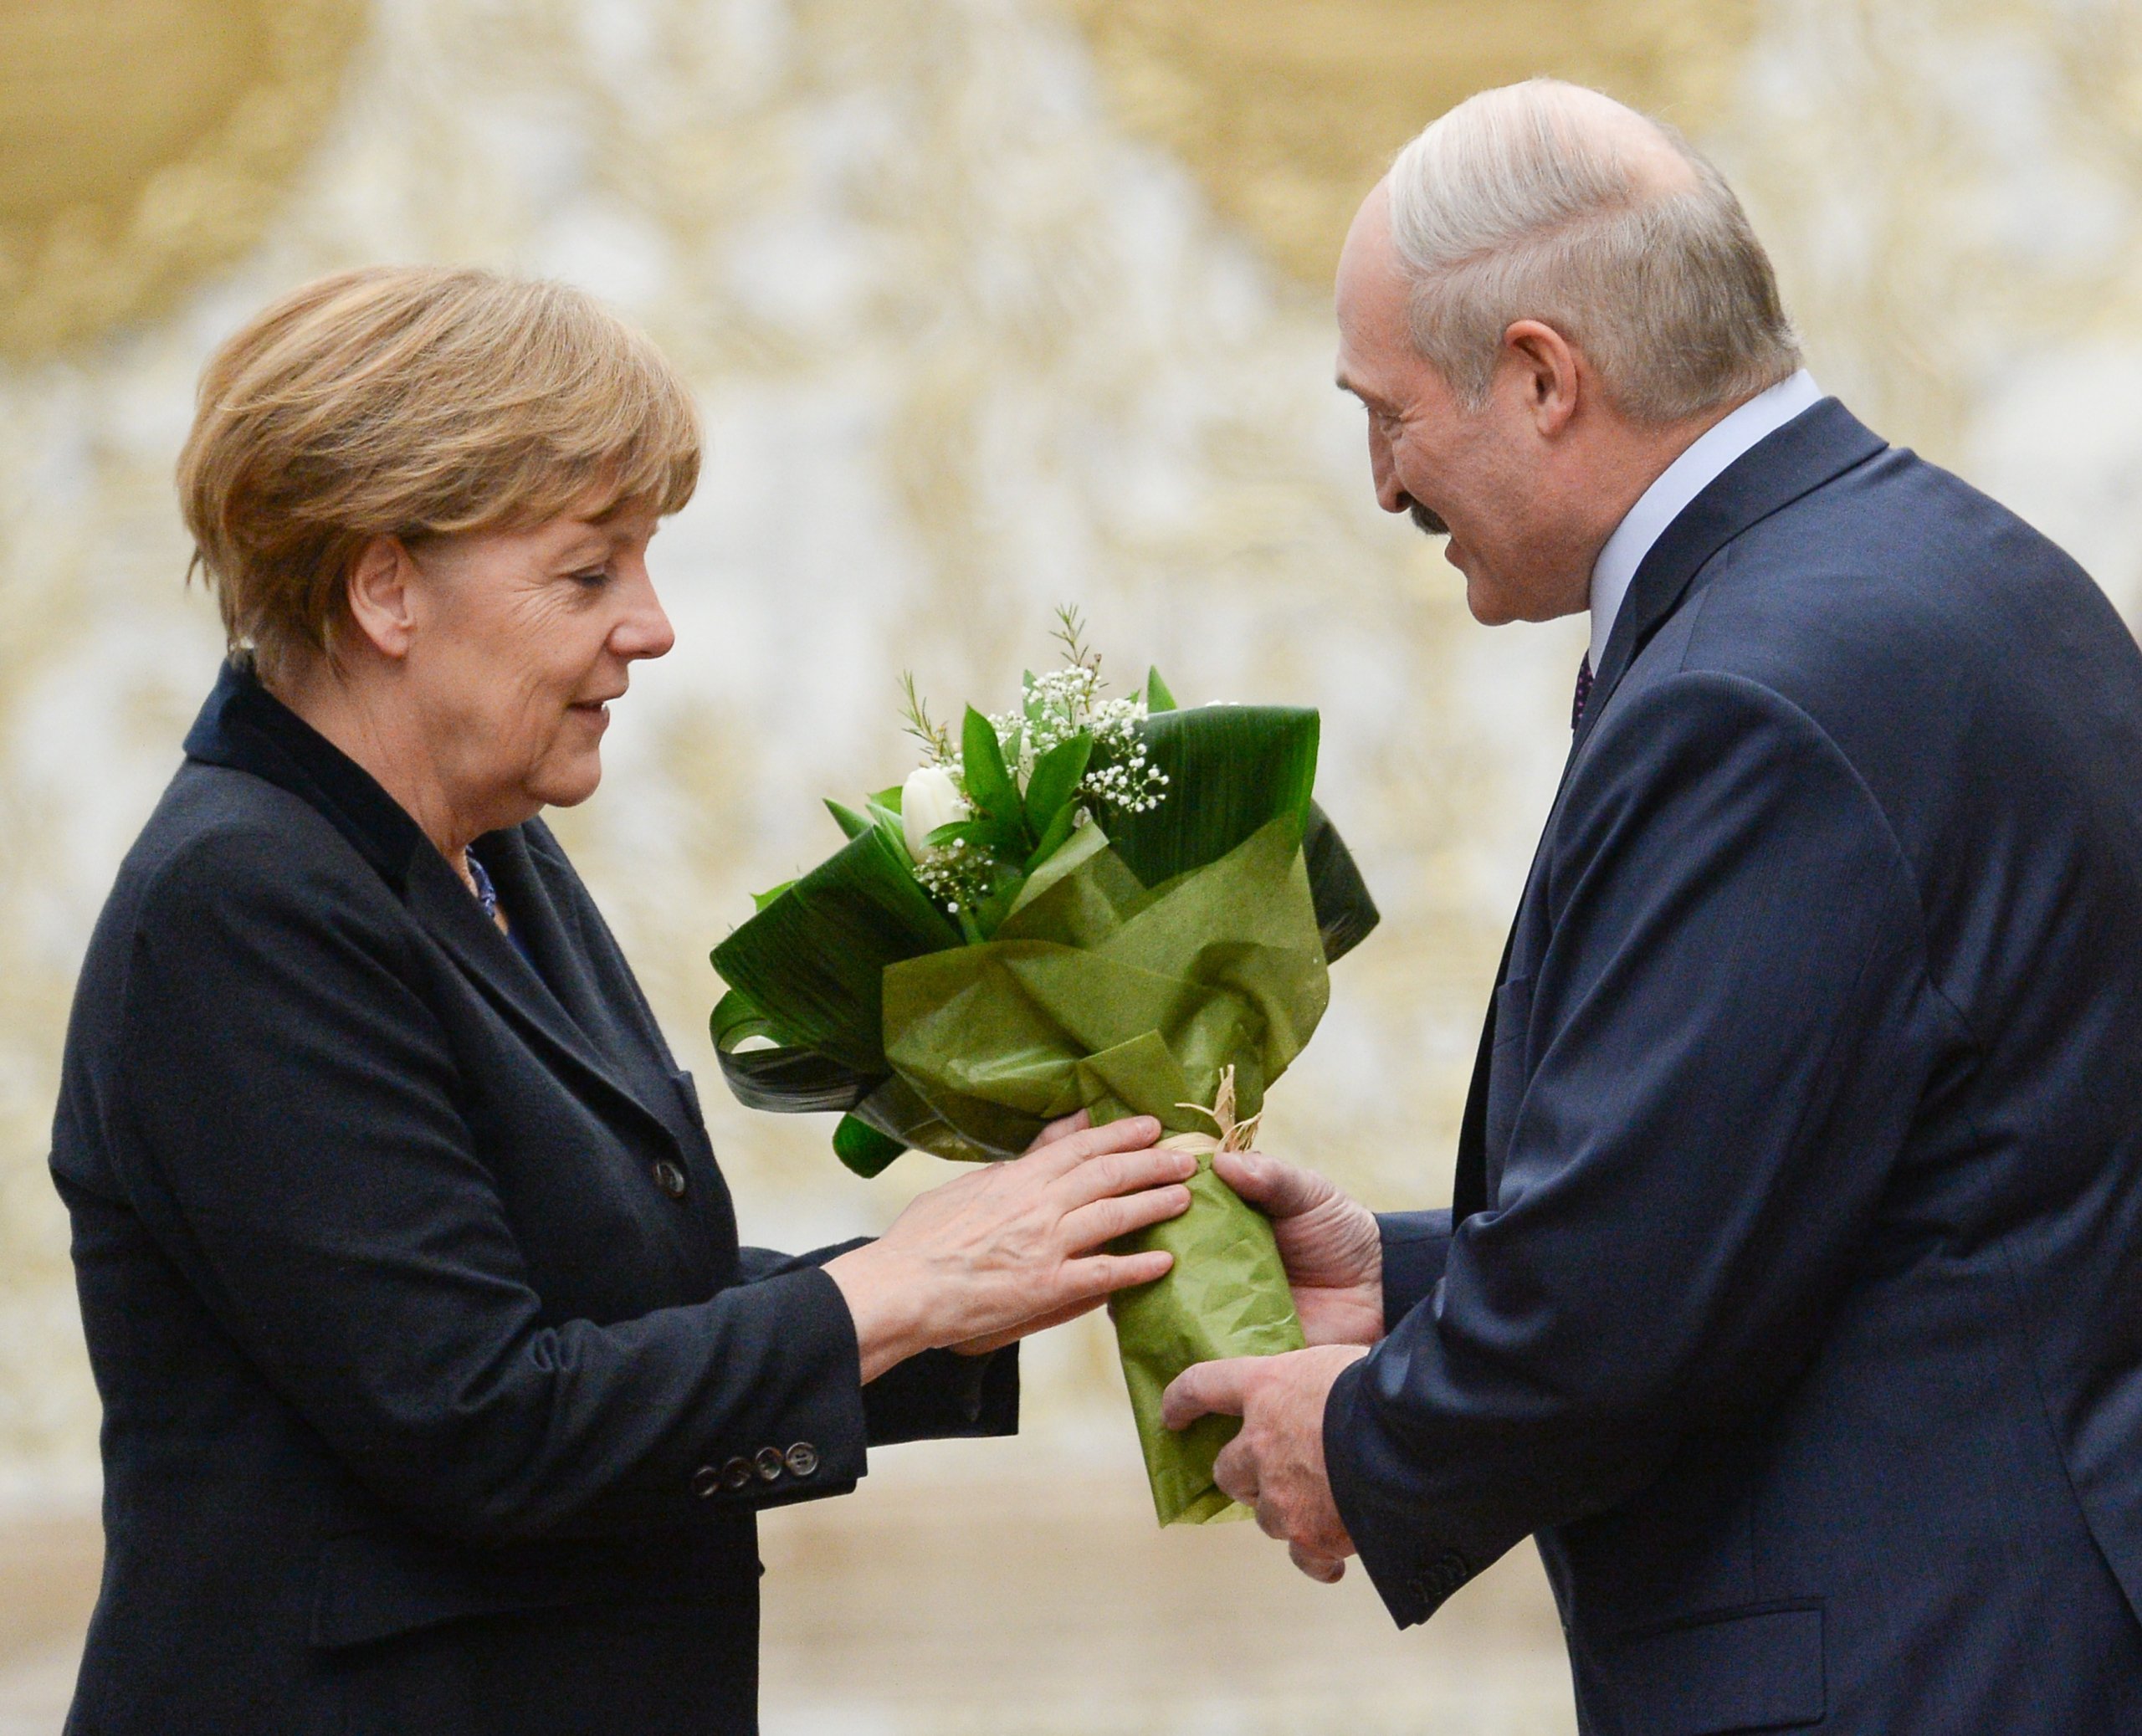 Лукашенко отказался обсуждать с Меркель протесты в Беларуси